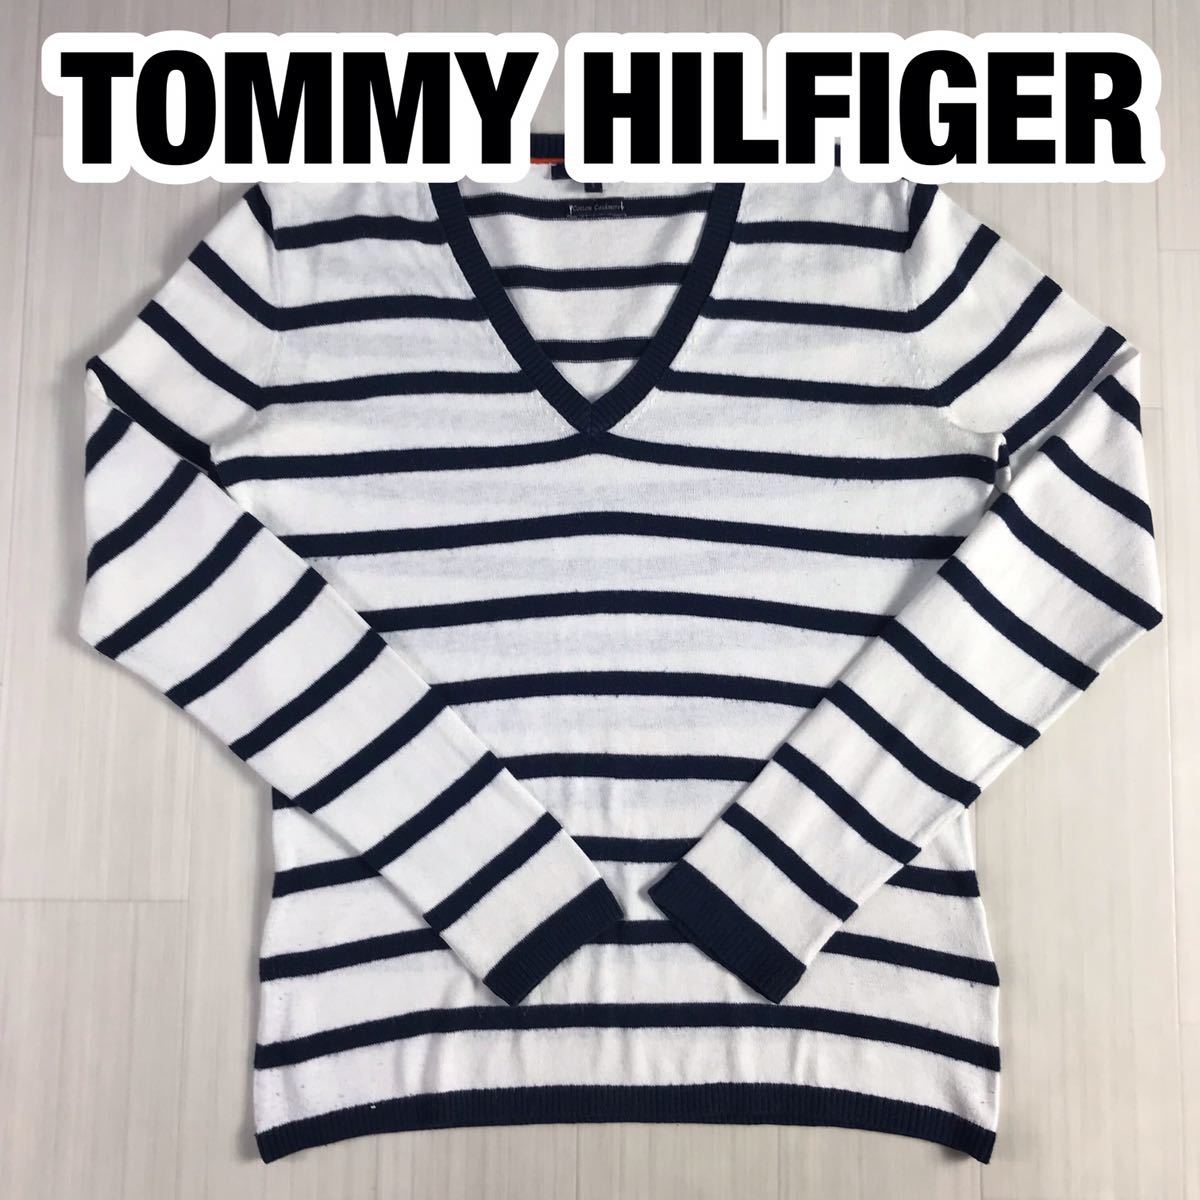 TOMMY HILFIGER トミー ヒルフィガー 長袖ニット セーター S ボーダー柄 ホワイト×ネイビー Vネック 刺繍ロゴ_画像1